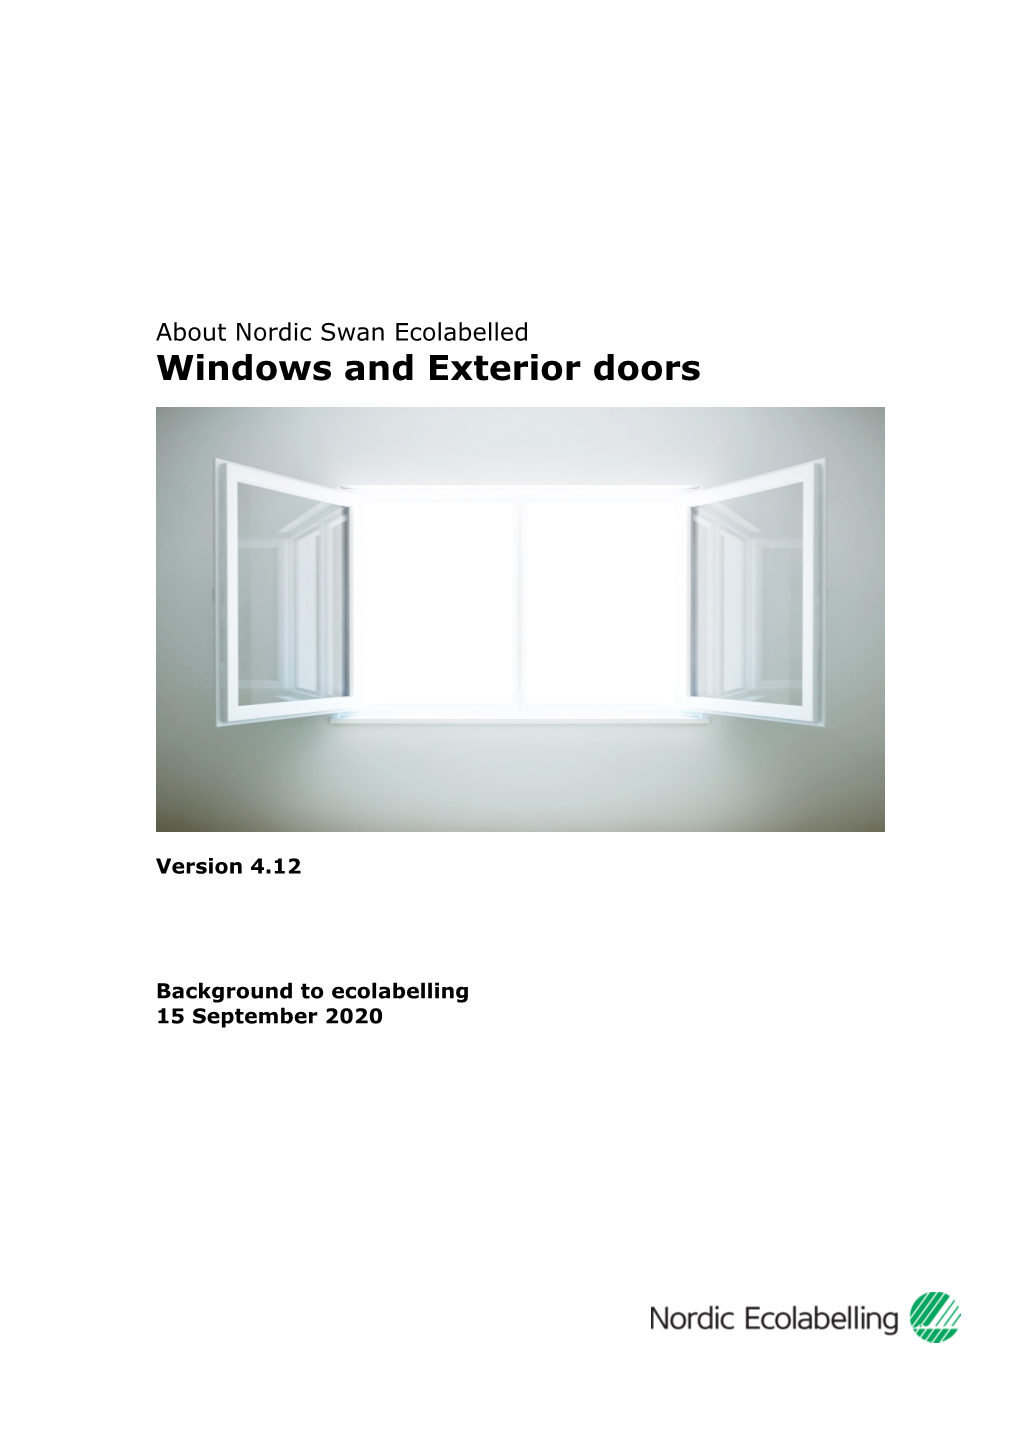 Windows and Exterior Doors